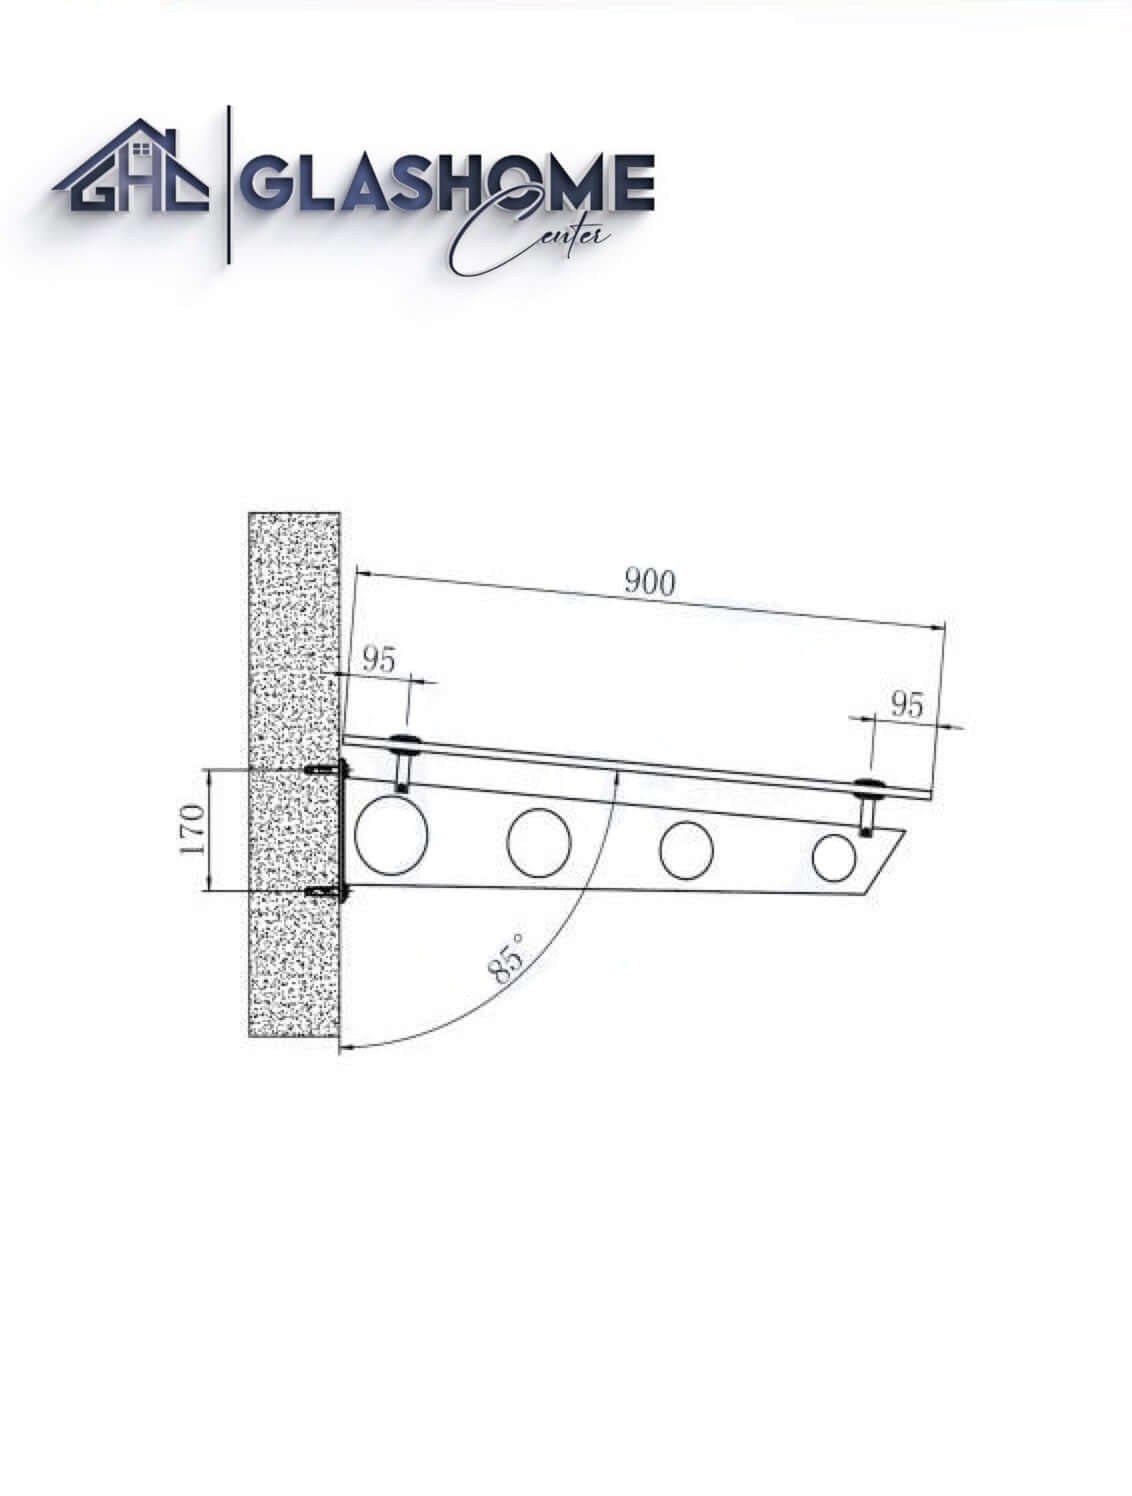 GlasHomeCenter - Glasvordach - Milchglas - 180x90cm - 13.1mm VSG - inkl. 2 Edelstahlhalterungen Variante "Stockholm"